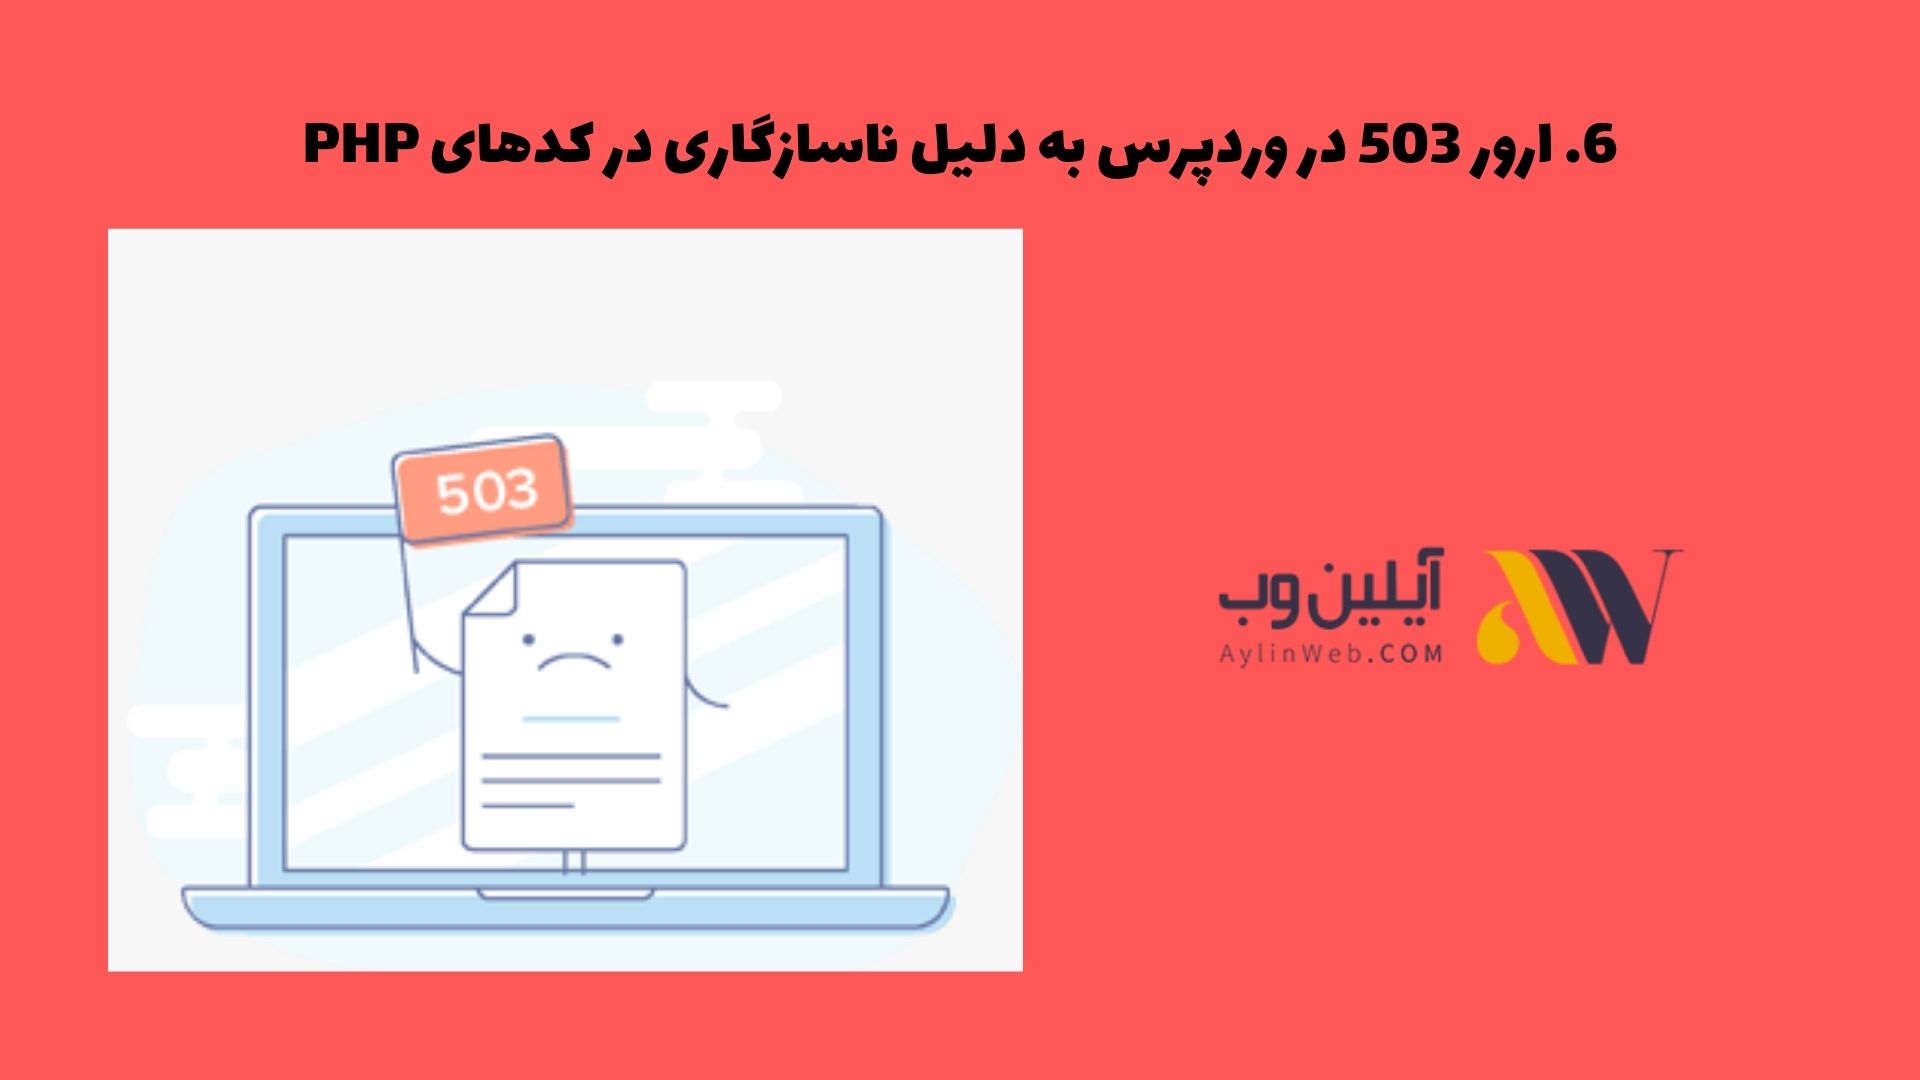 ارور 503 در وردپرس به دلیل ناسازگاری در کدهای PHP